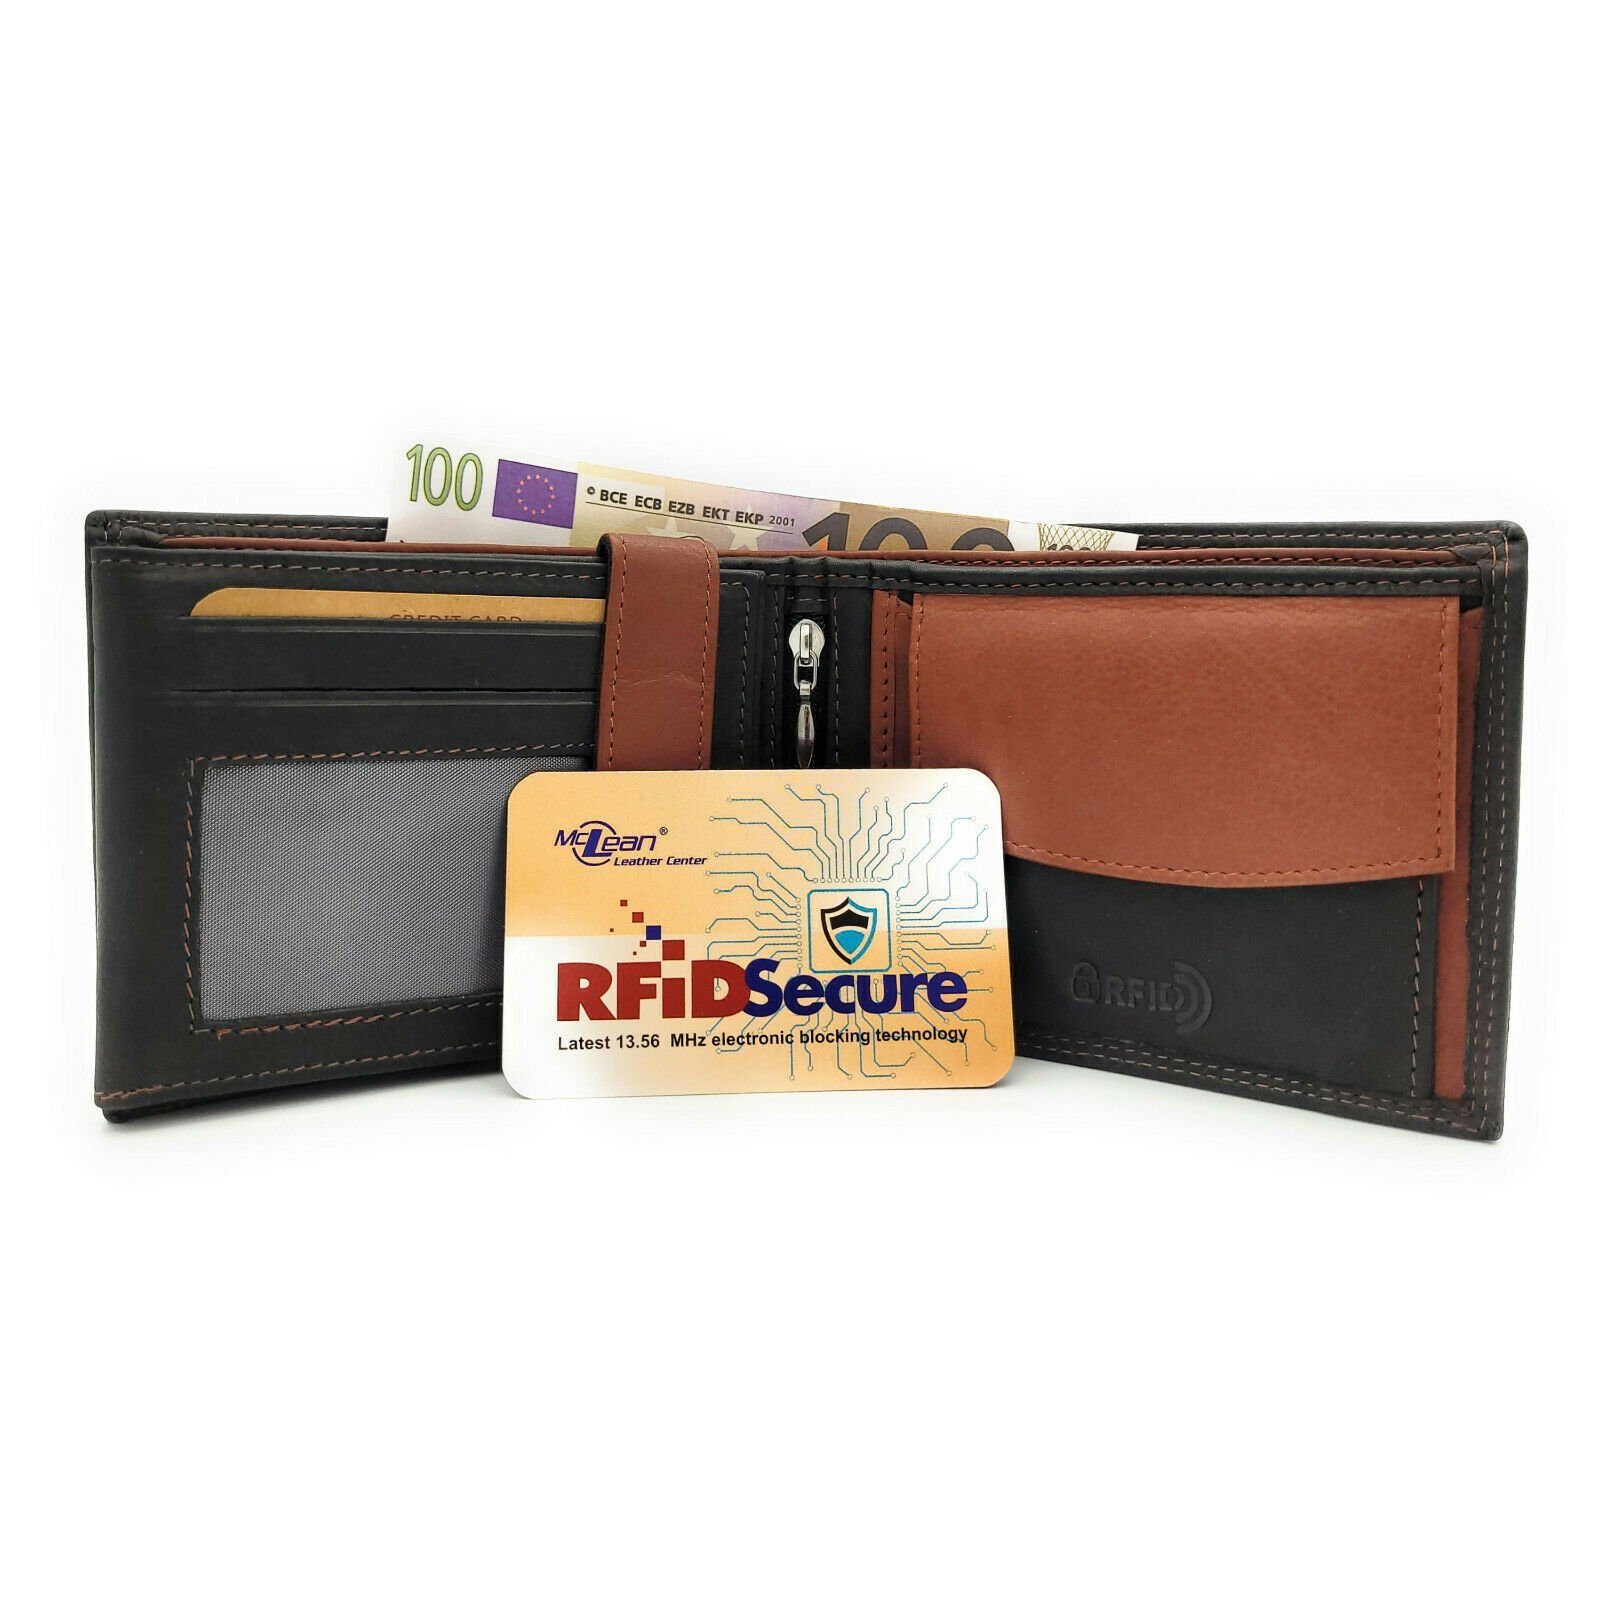 McLean Geldbörse echt Leder Schutz, Sicherung Karten, RFID zur mit schwarz braun der Portemonnaie Innenriegel Herren